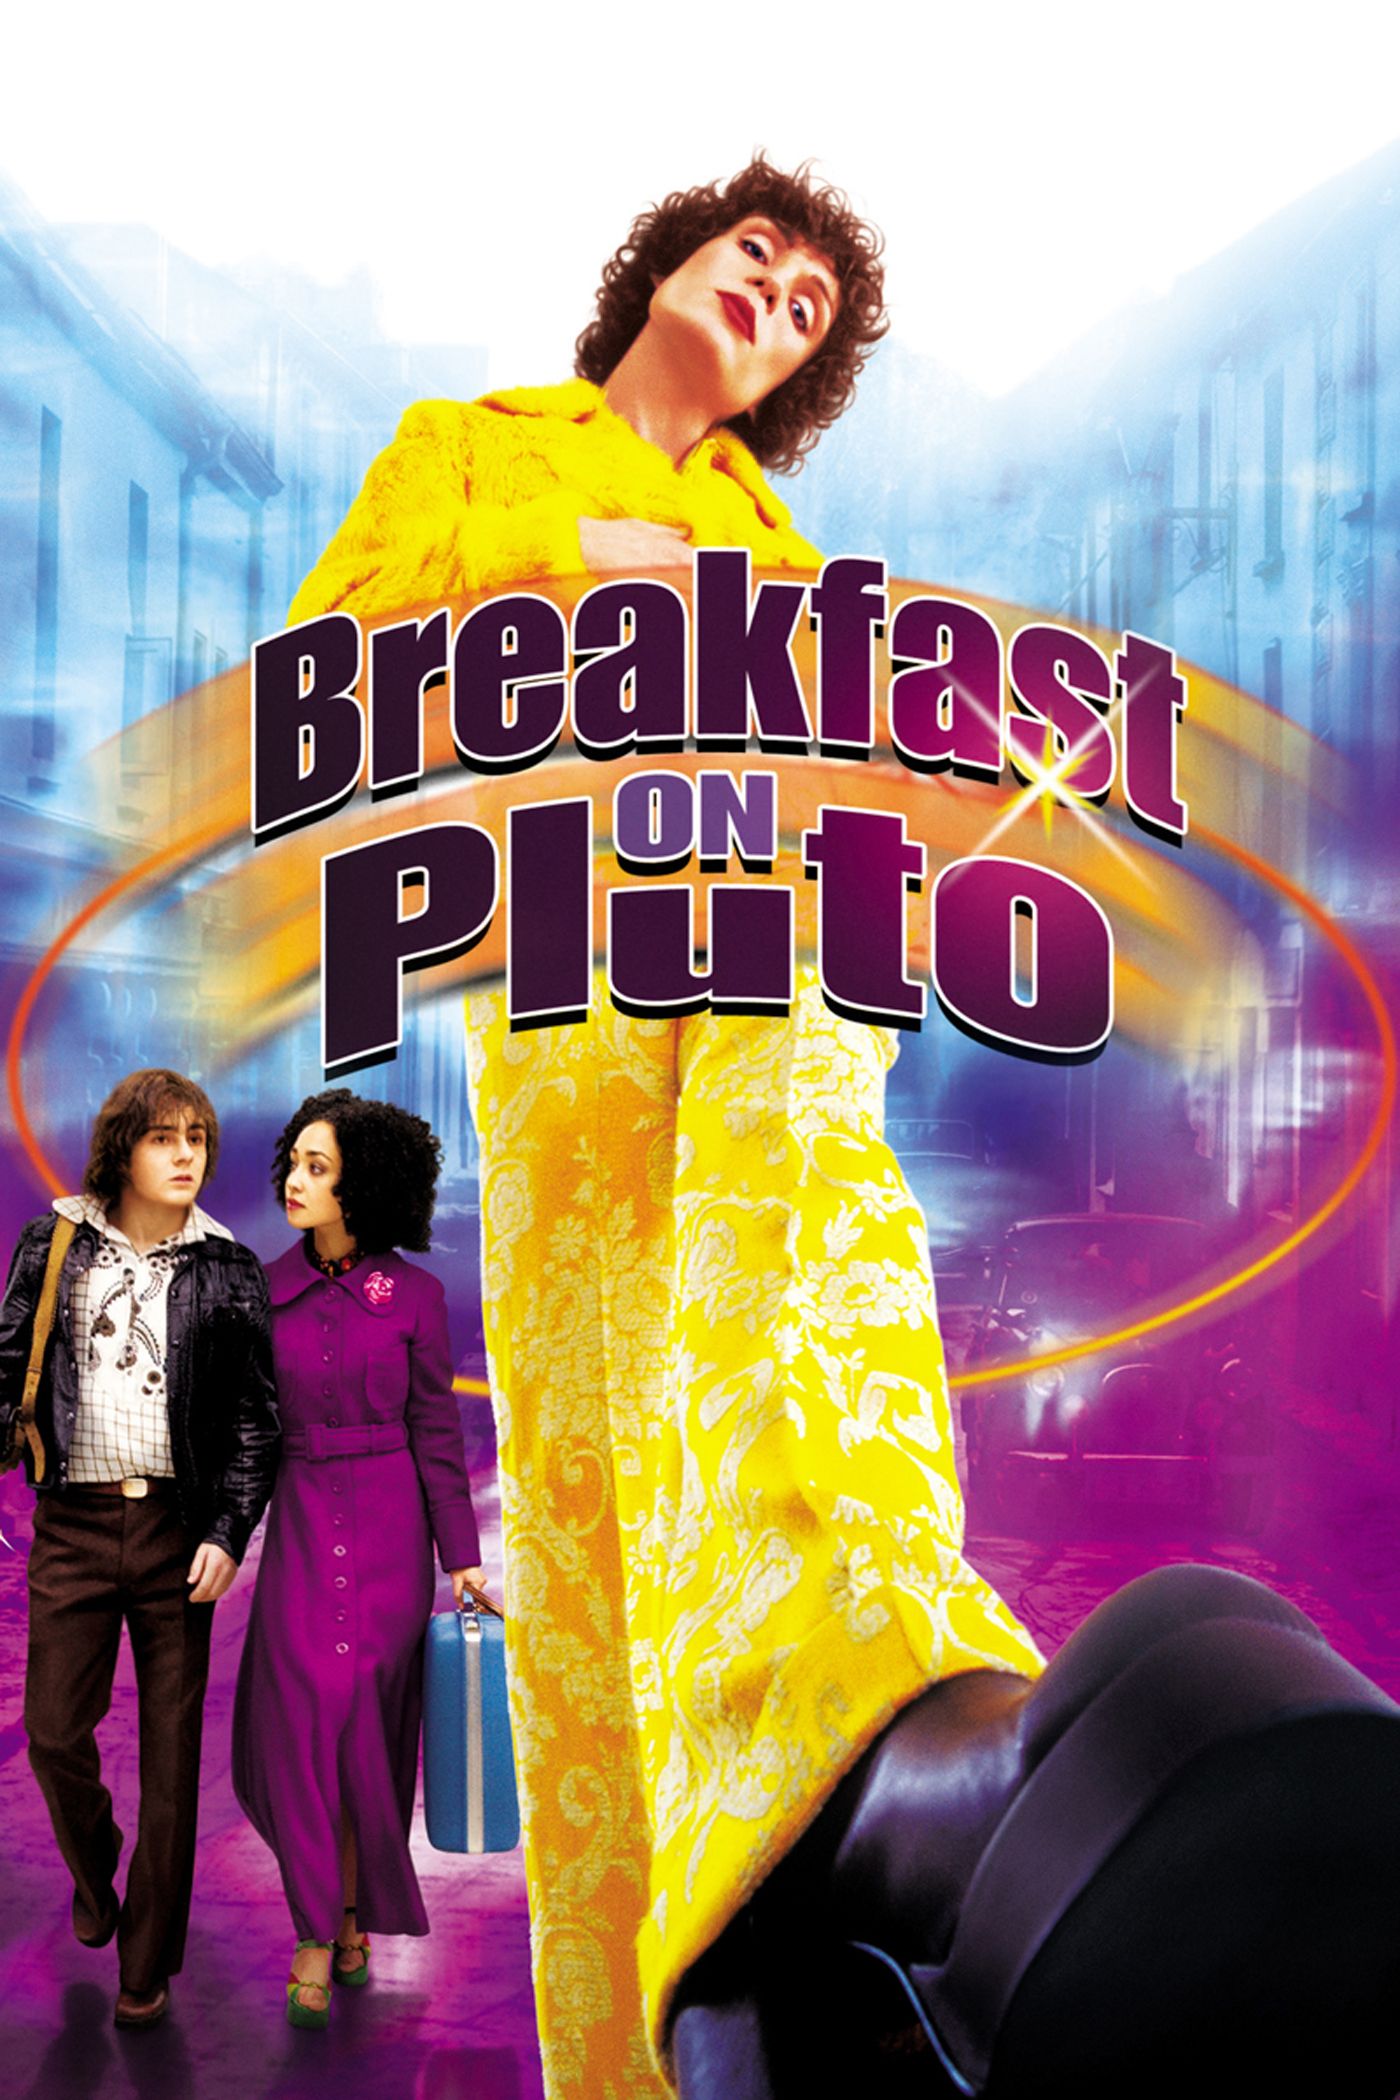 Pluto - Rotten Tomatoes